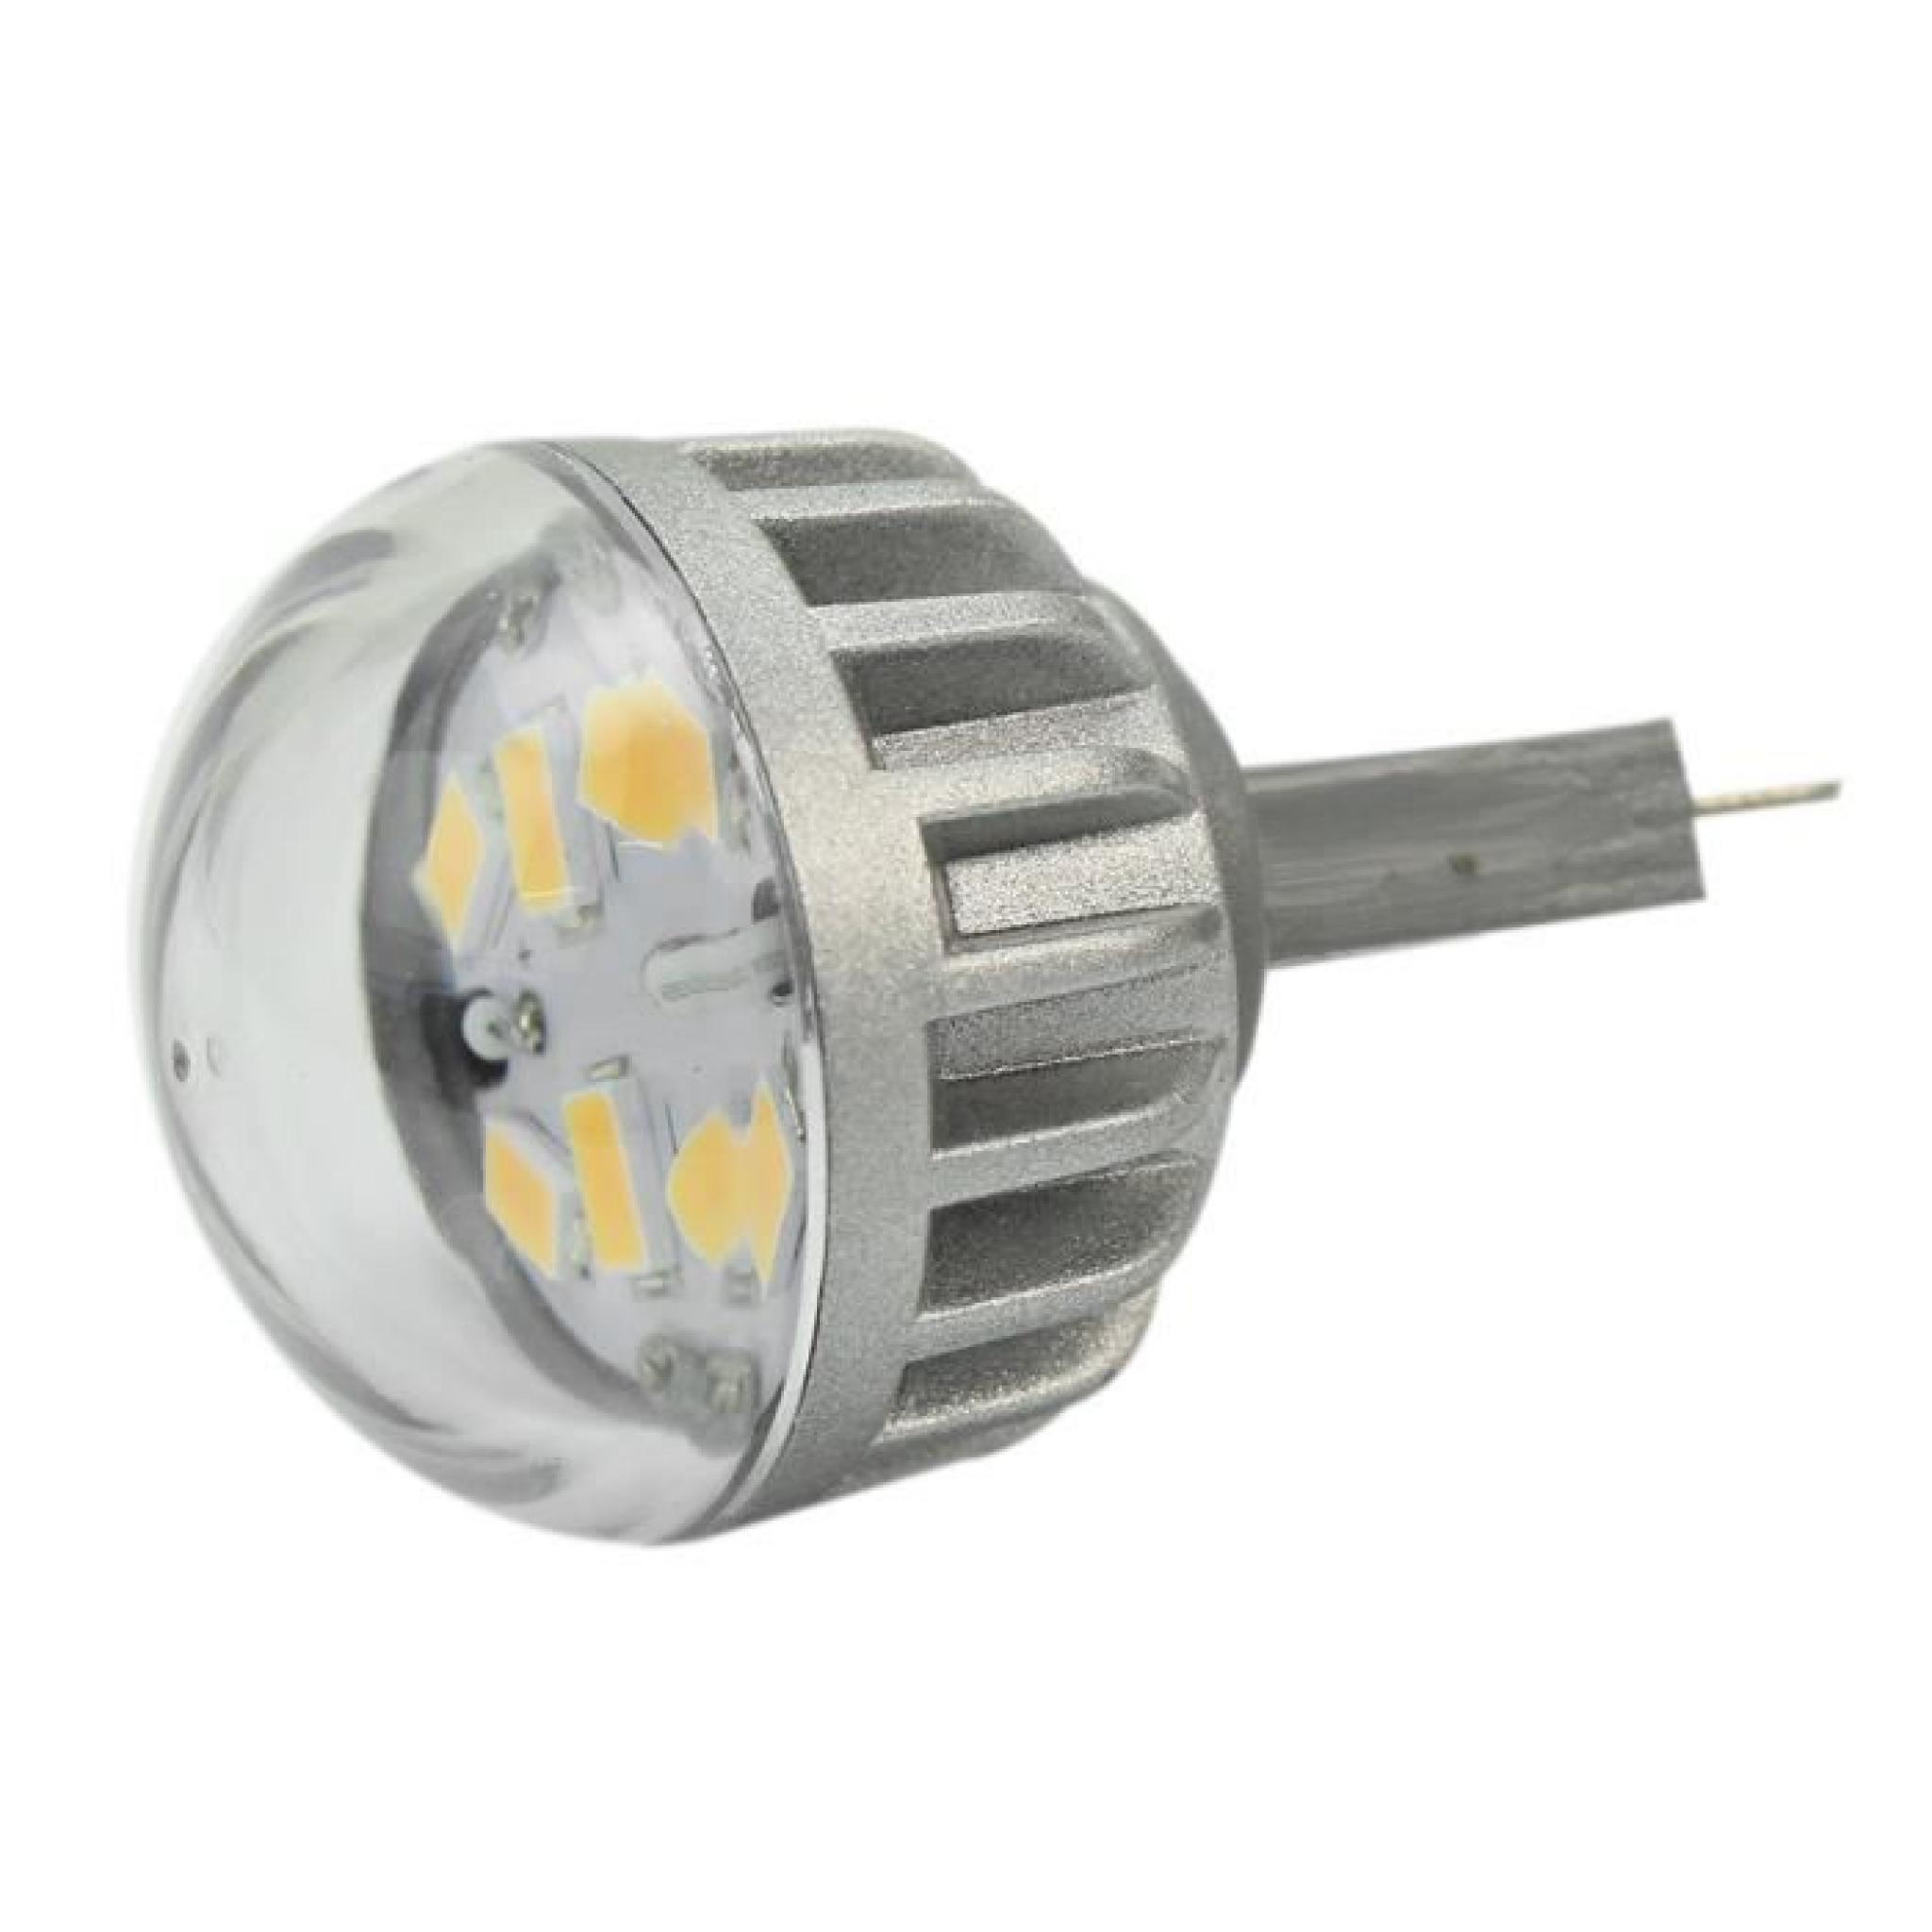 G9 2W LED SMD 5630 70lm Ampoule Lampe lumière Blanc Chaud phare Feux Maison pas cher